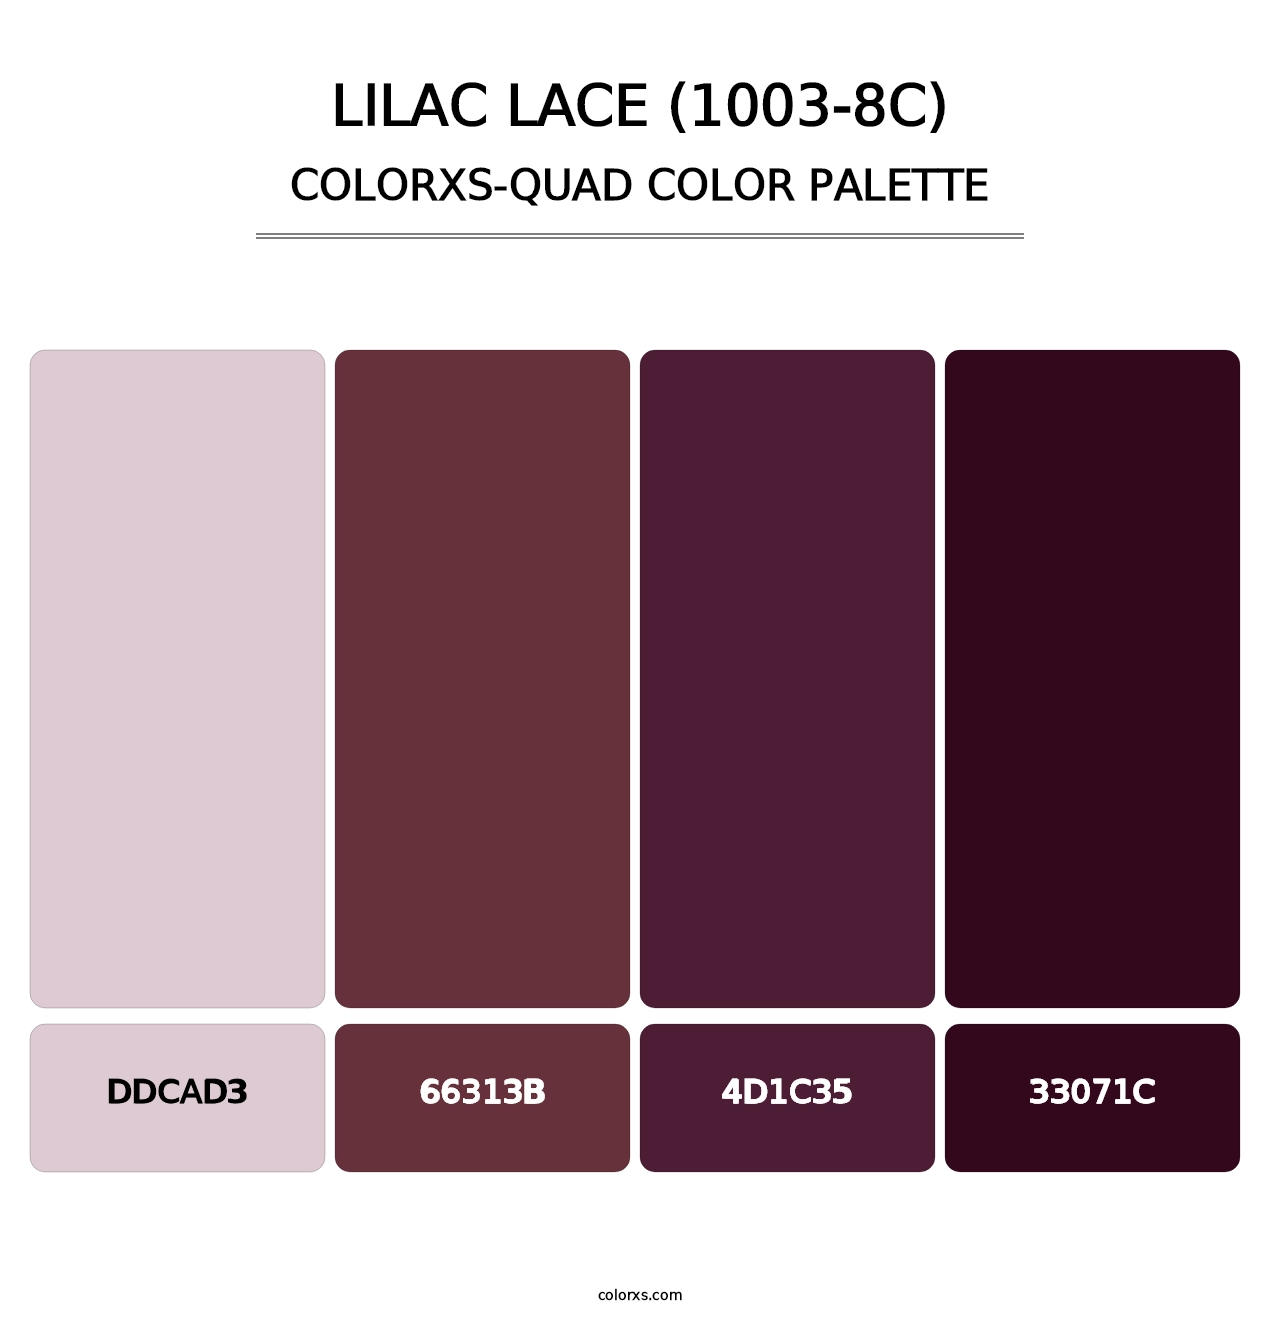 Lilac Lace (1003-8C) - Colorxs Quad Palette